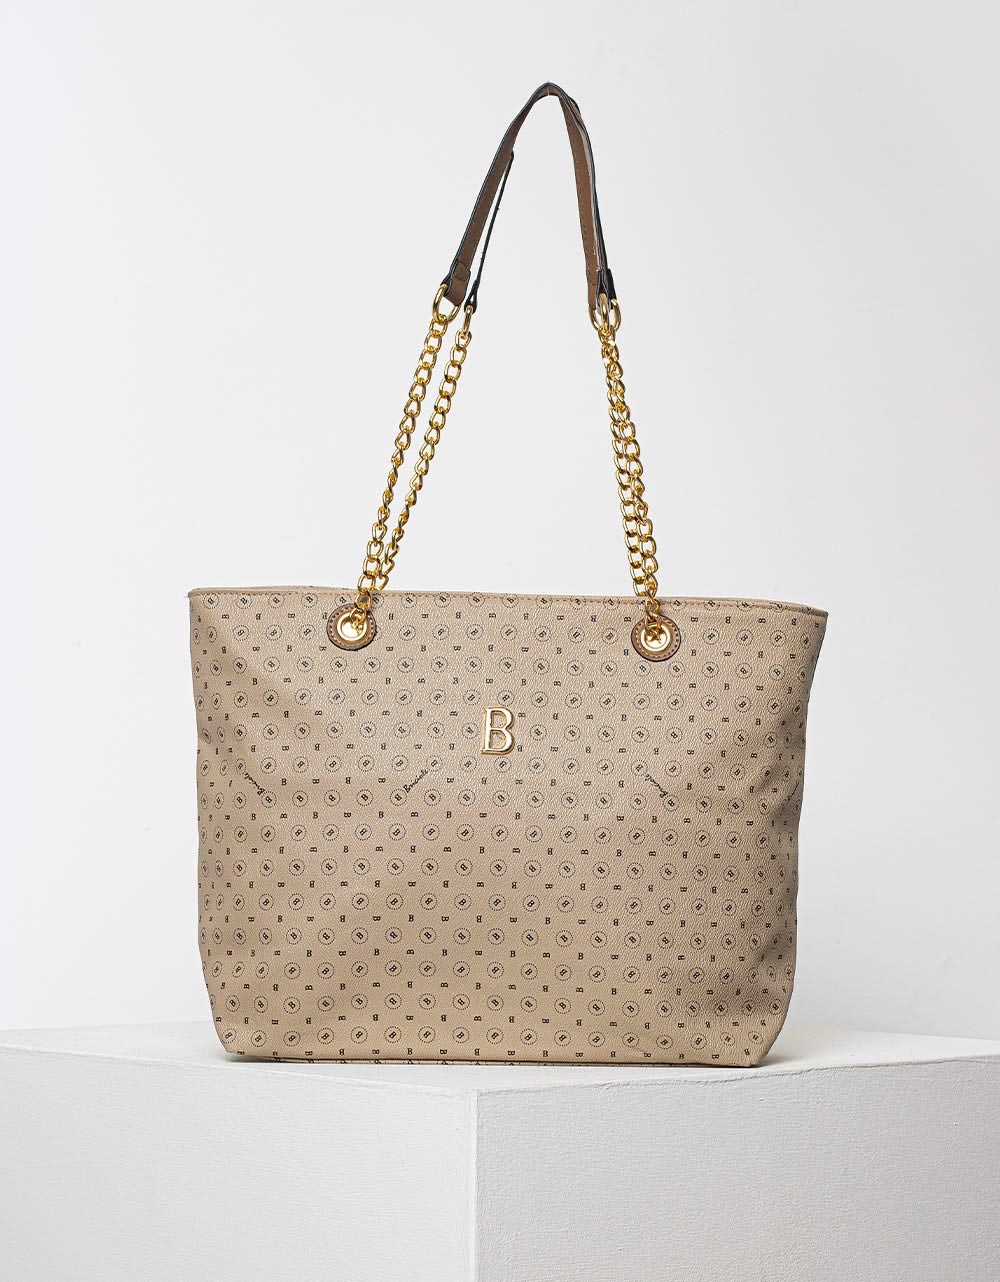 Εικόνα από Γυναικεία τσάντα χειρός με pattern γραμμάτων και χρυσές λεπτομέρειες Μπεζ